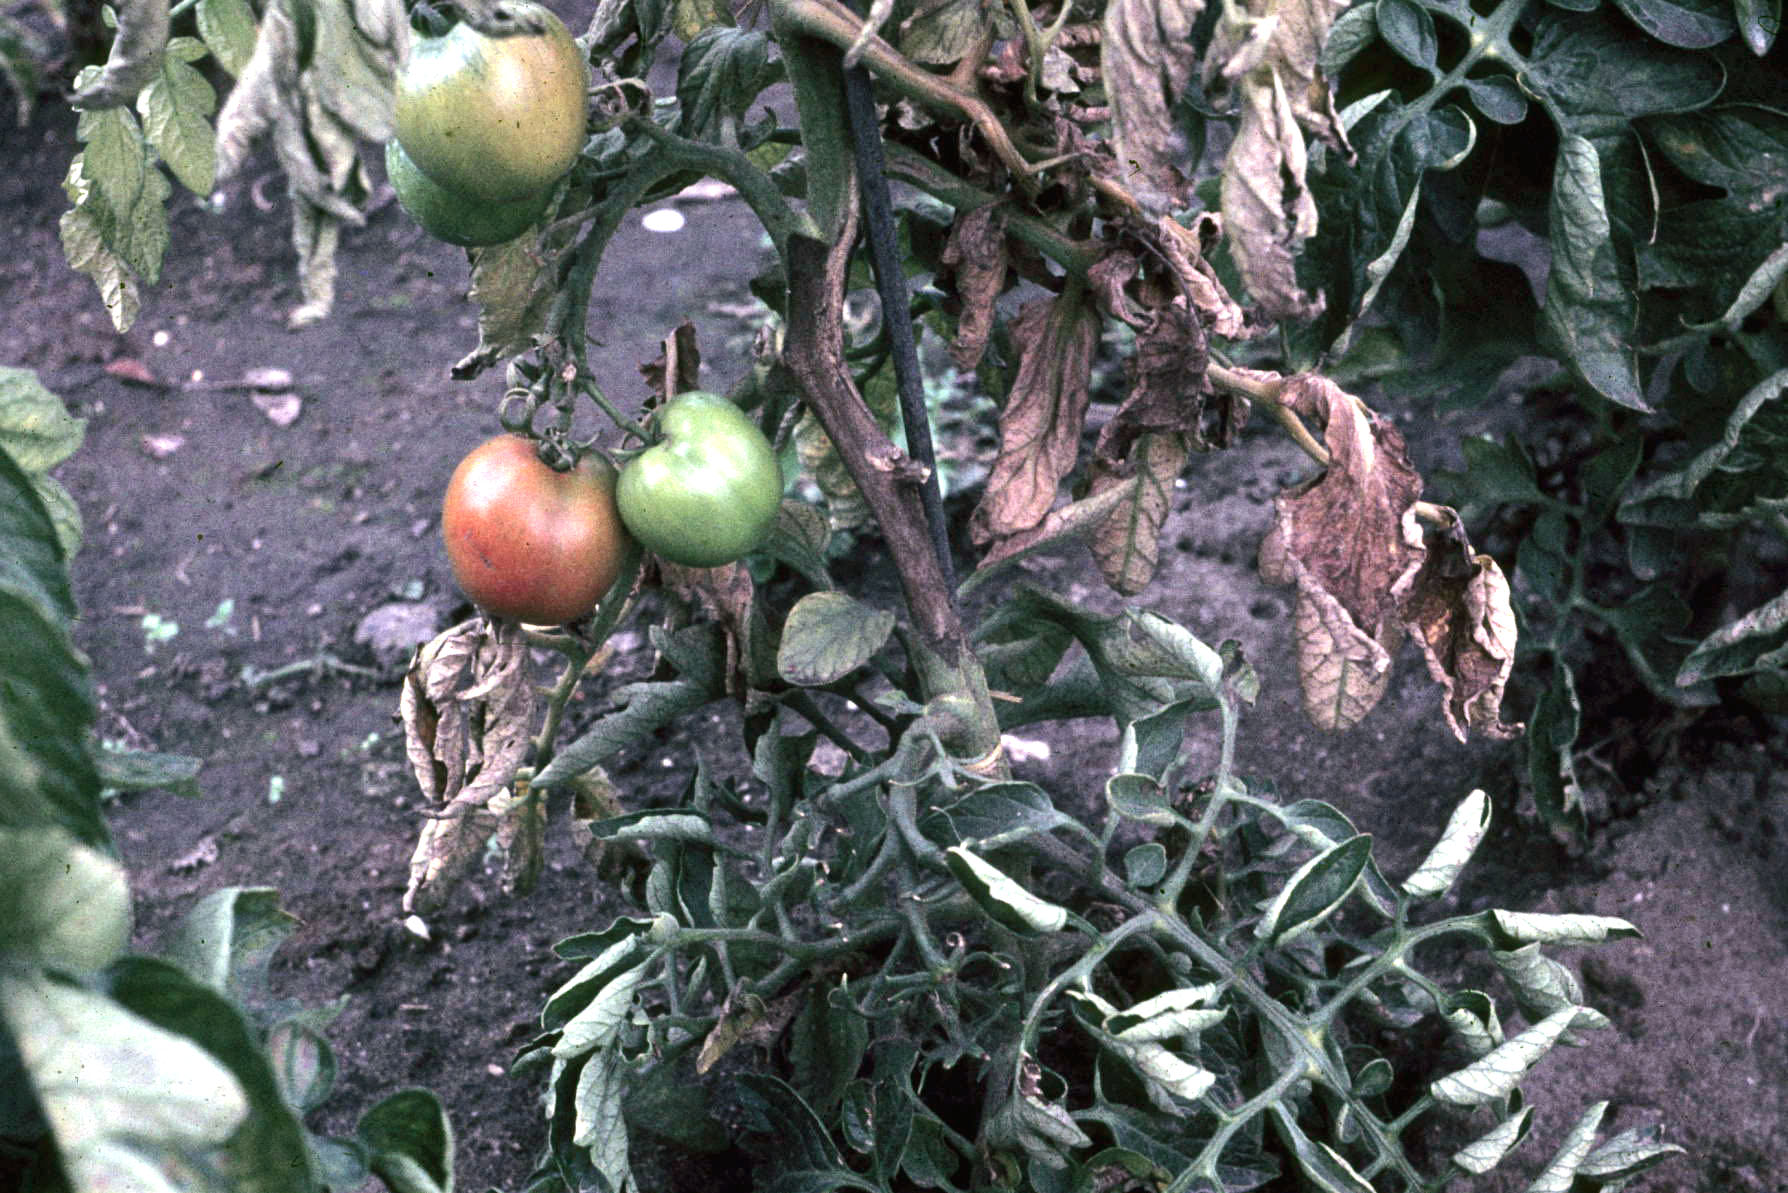 Frucht- und Stängelfäule an Tomatenpflanze mit Früchten